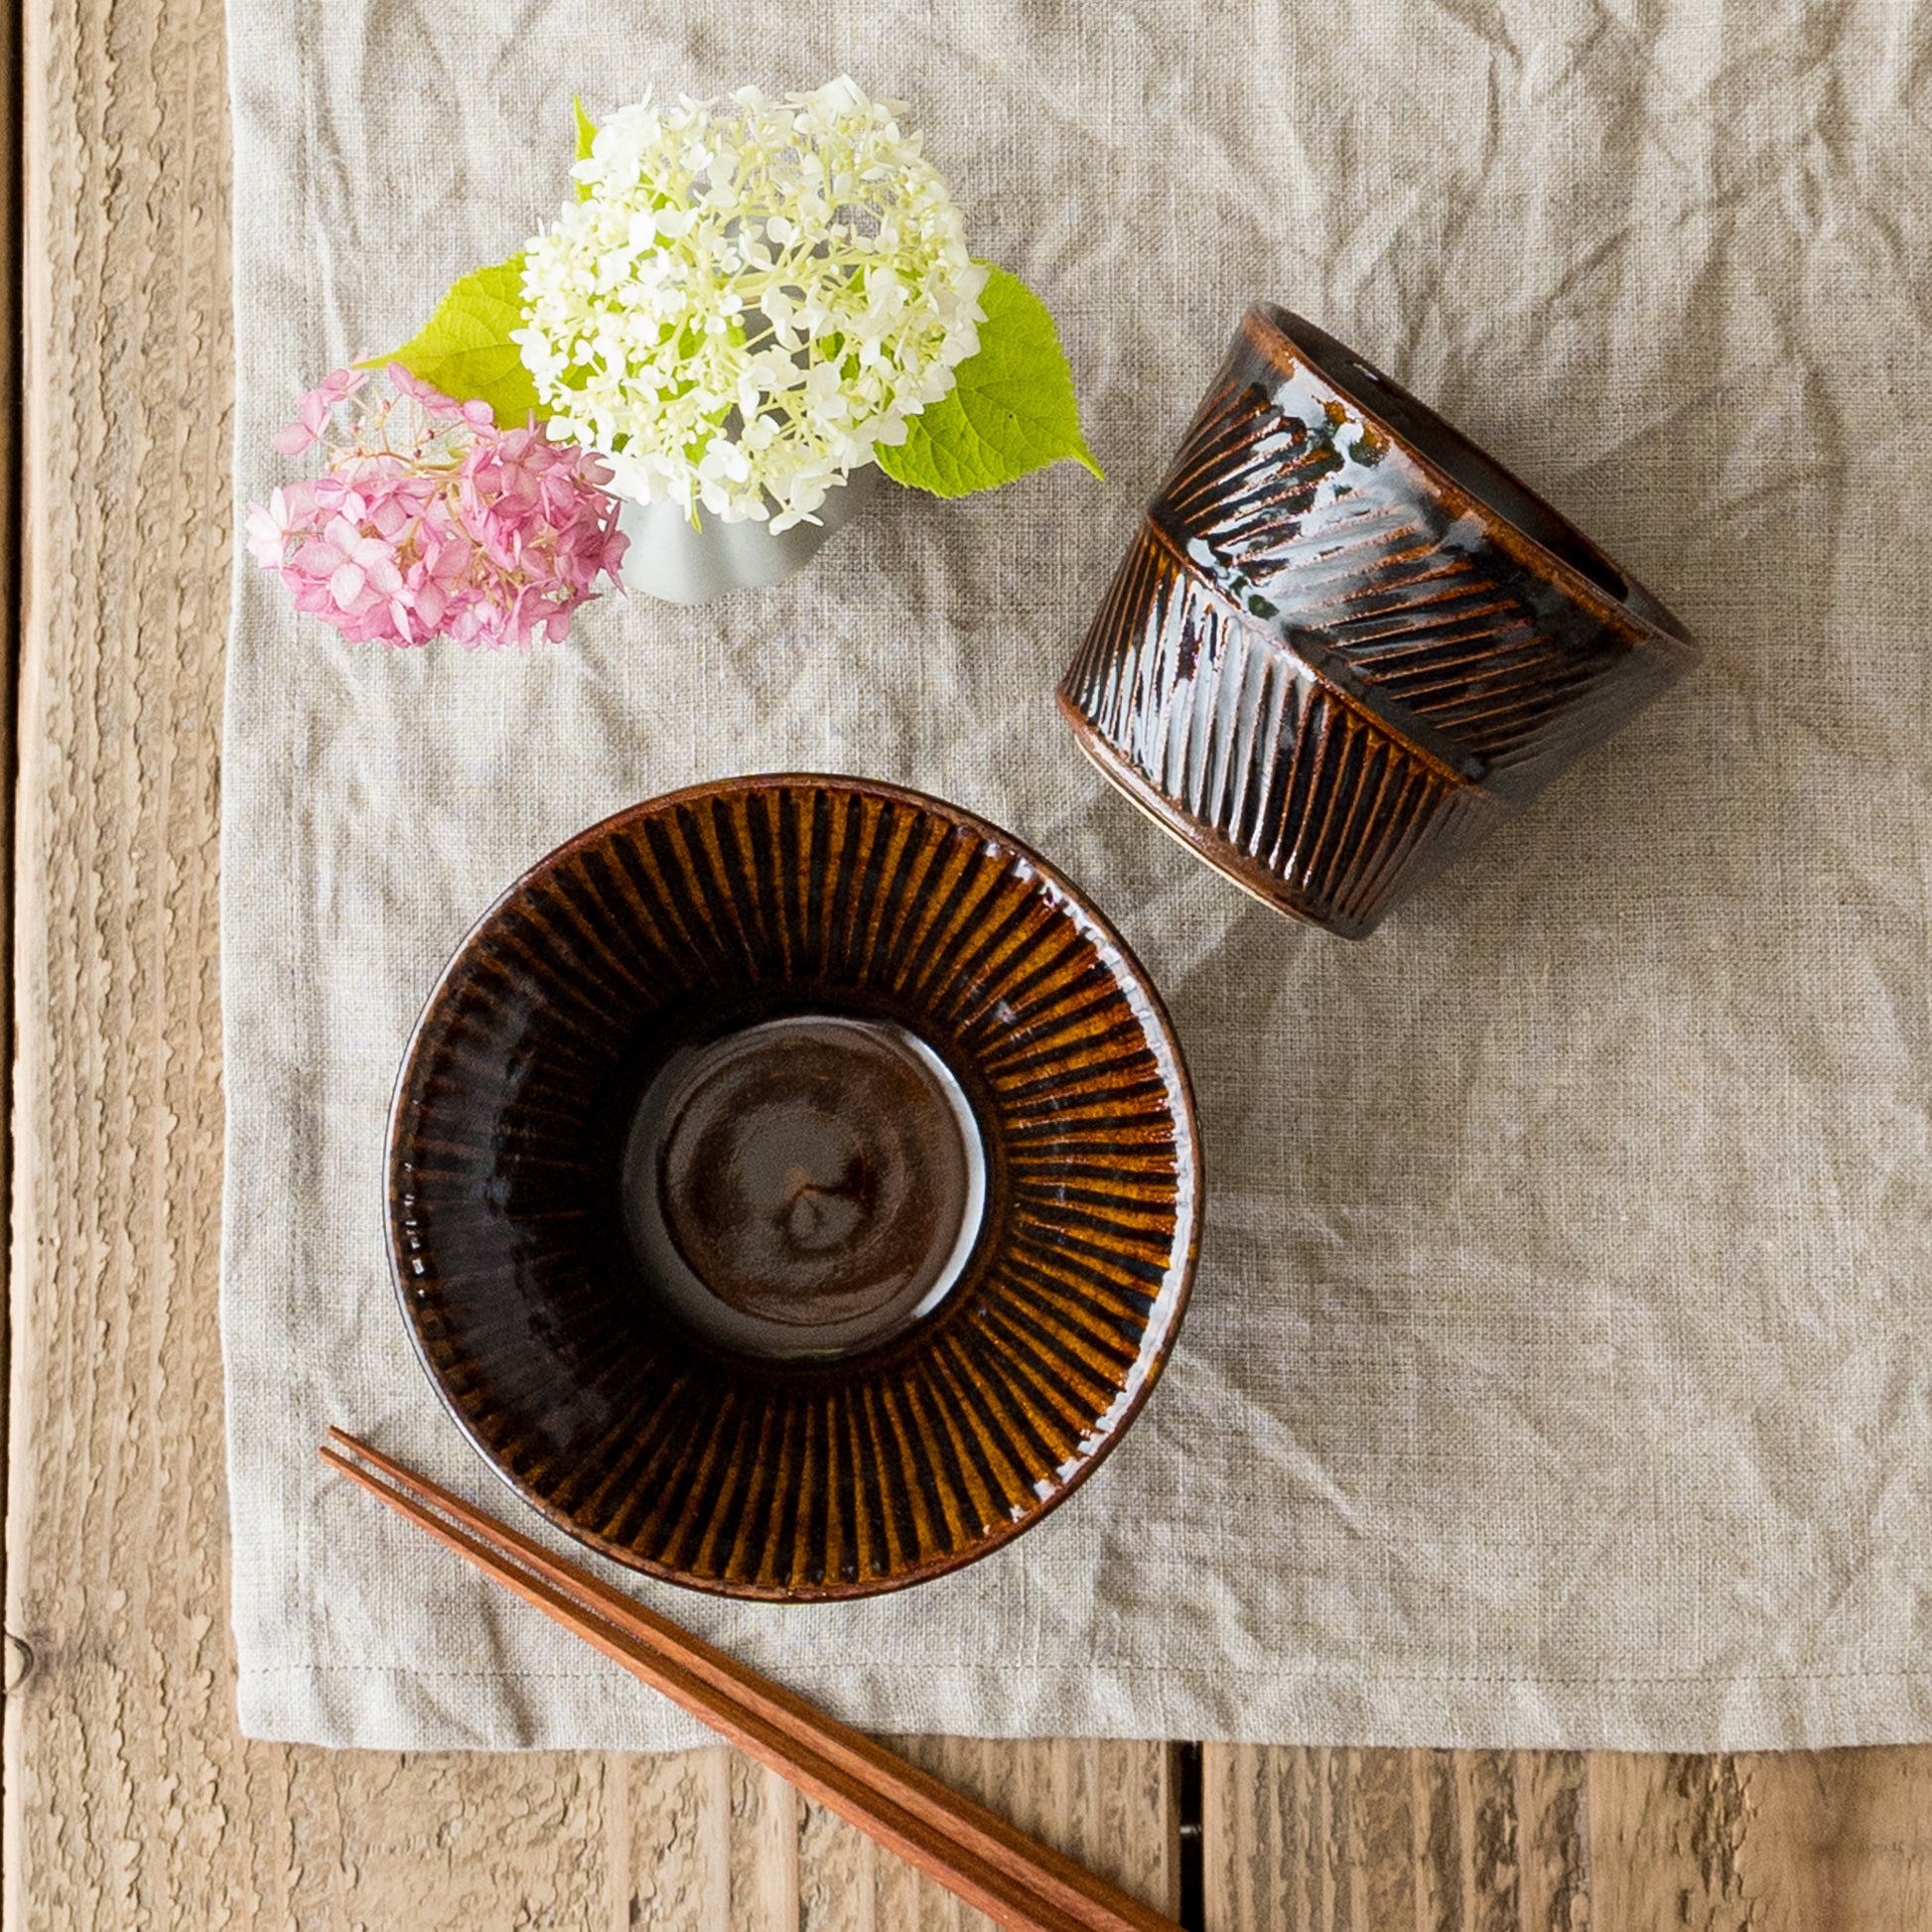 若菜綾子さんの矢羽根彫りフリーカップと細鎬深鉢飴